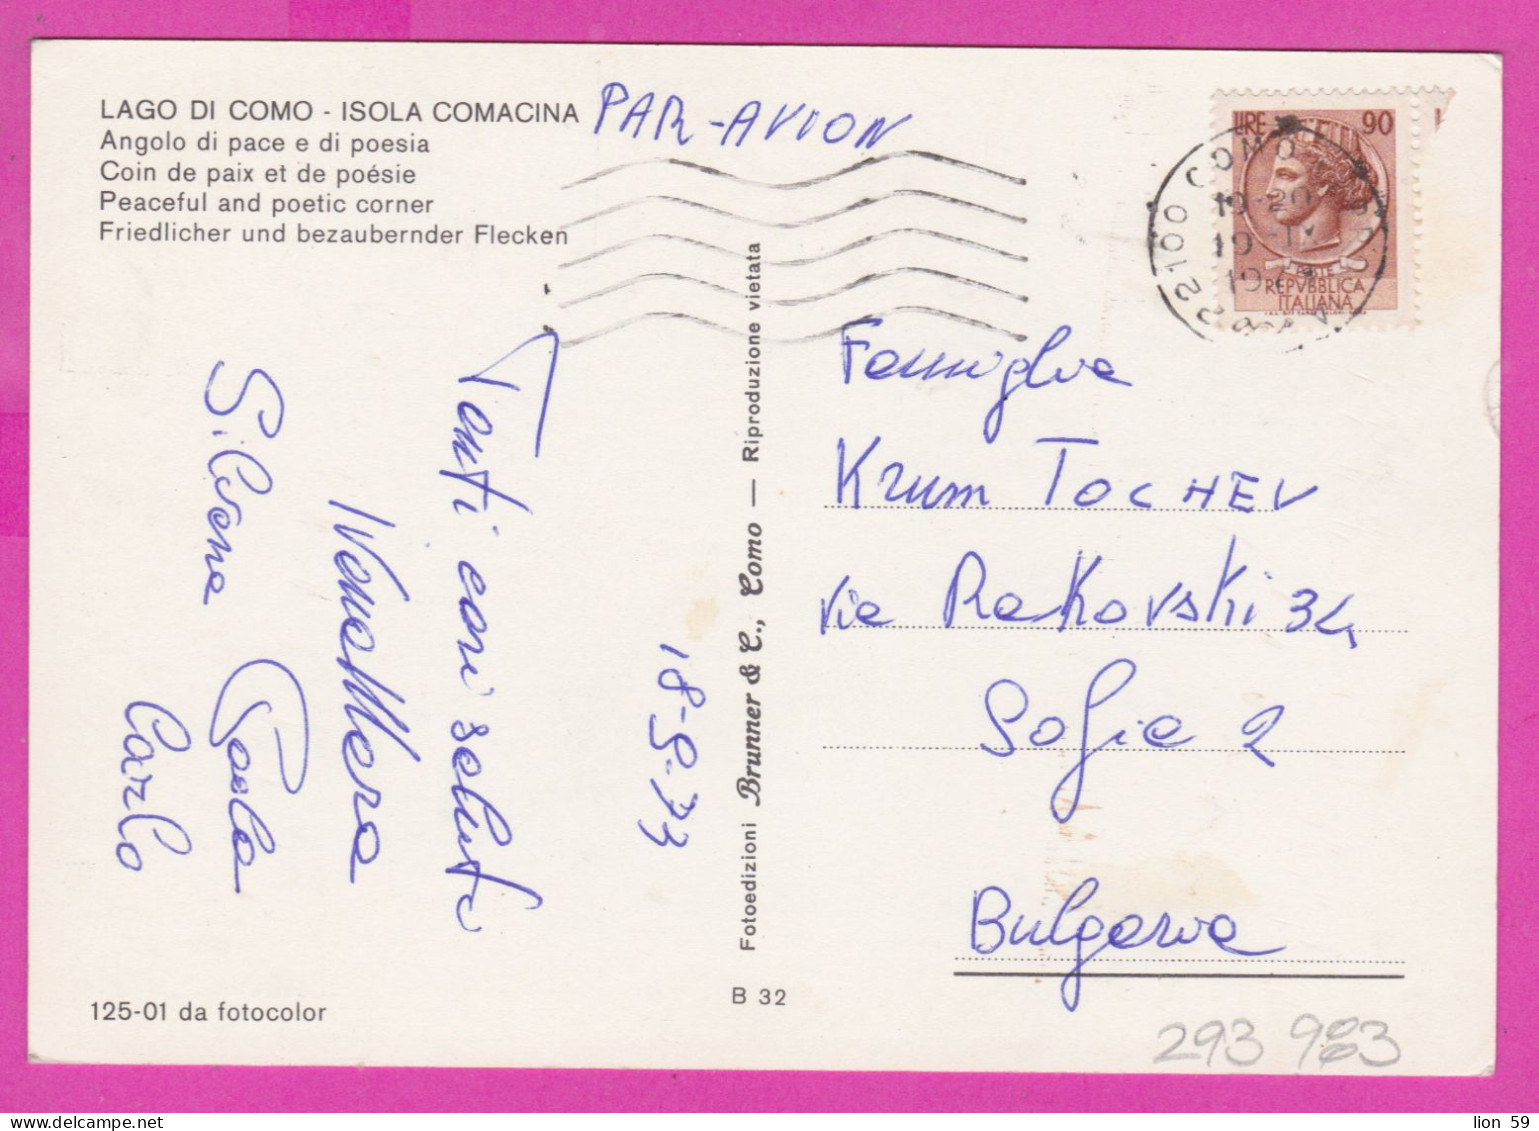 293983 / Italy - LAGO DI COMO - Isola Comacina , Angolo Di Pace E Di Poesia PC 1973 USED 90 L Coin Of Syracuse - 1971-80: Poststempel